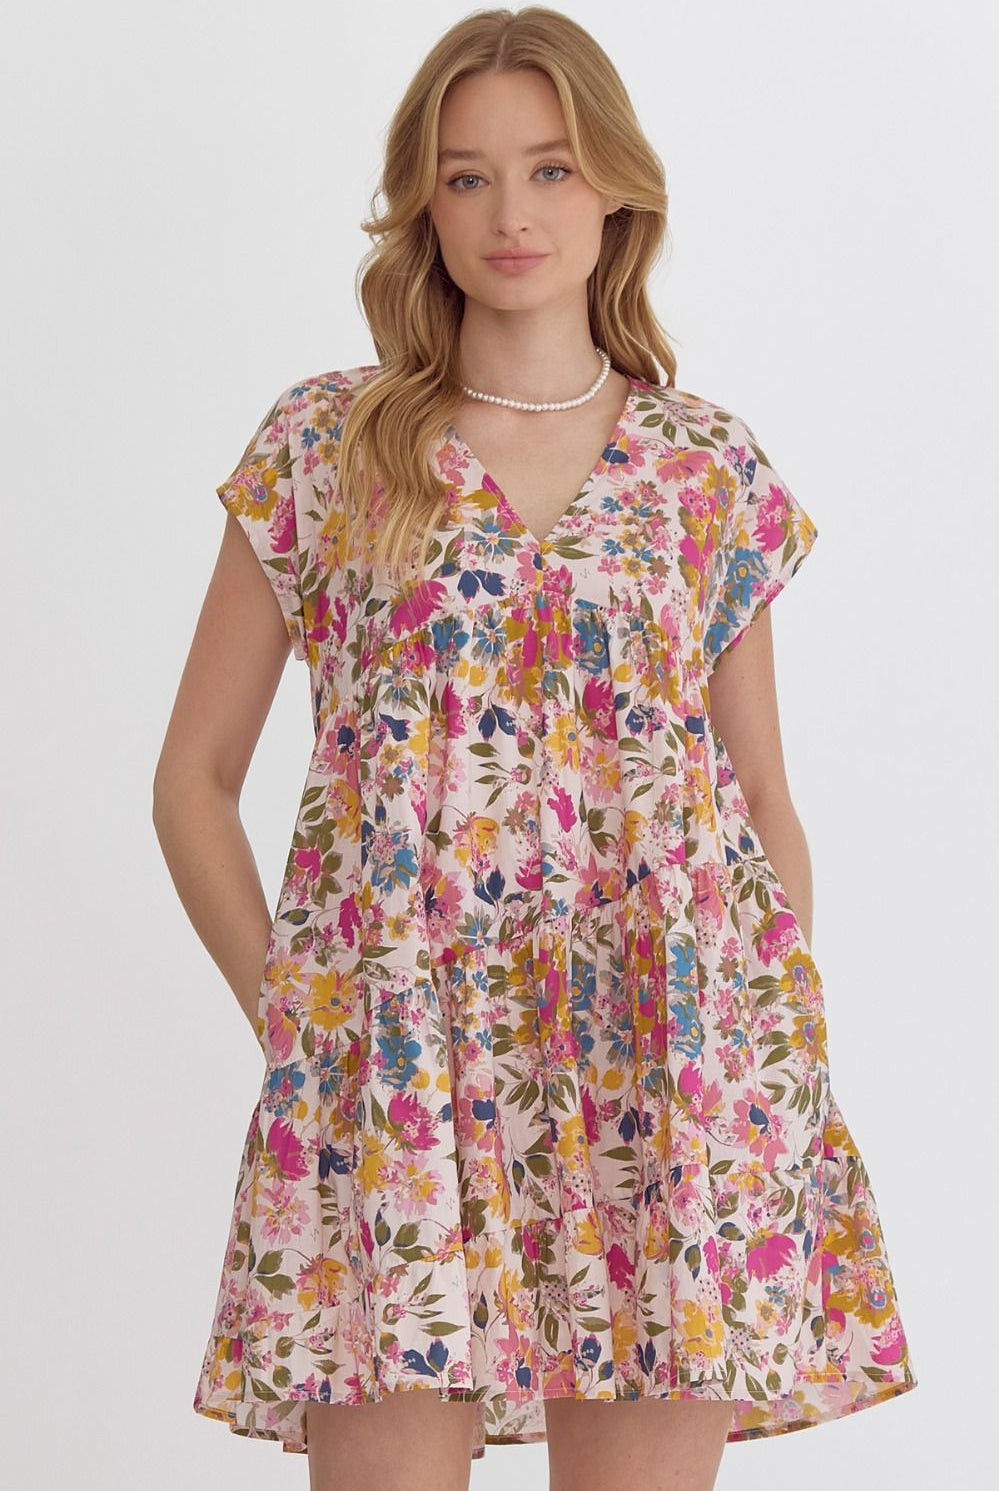 Kat Floral Print Short Sleeve V Neck Dress - Be You Boutique